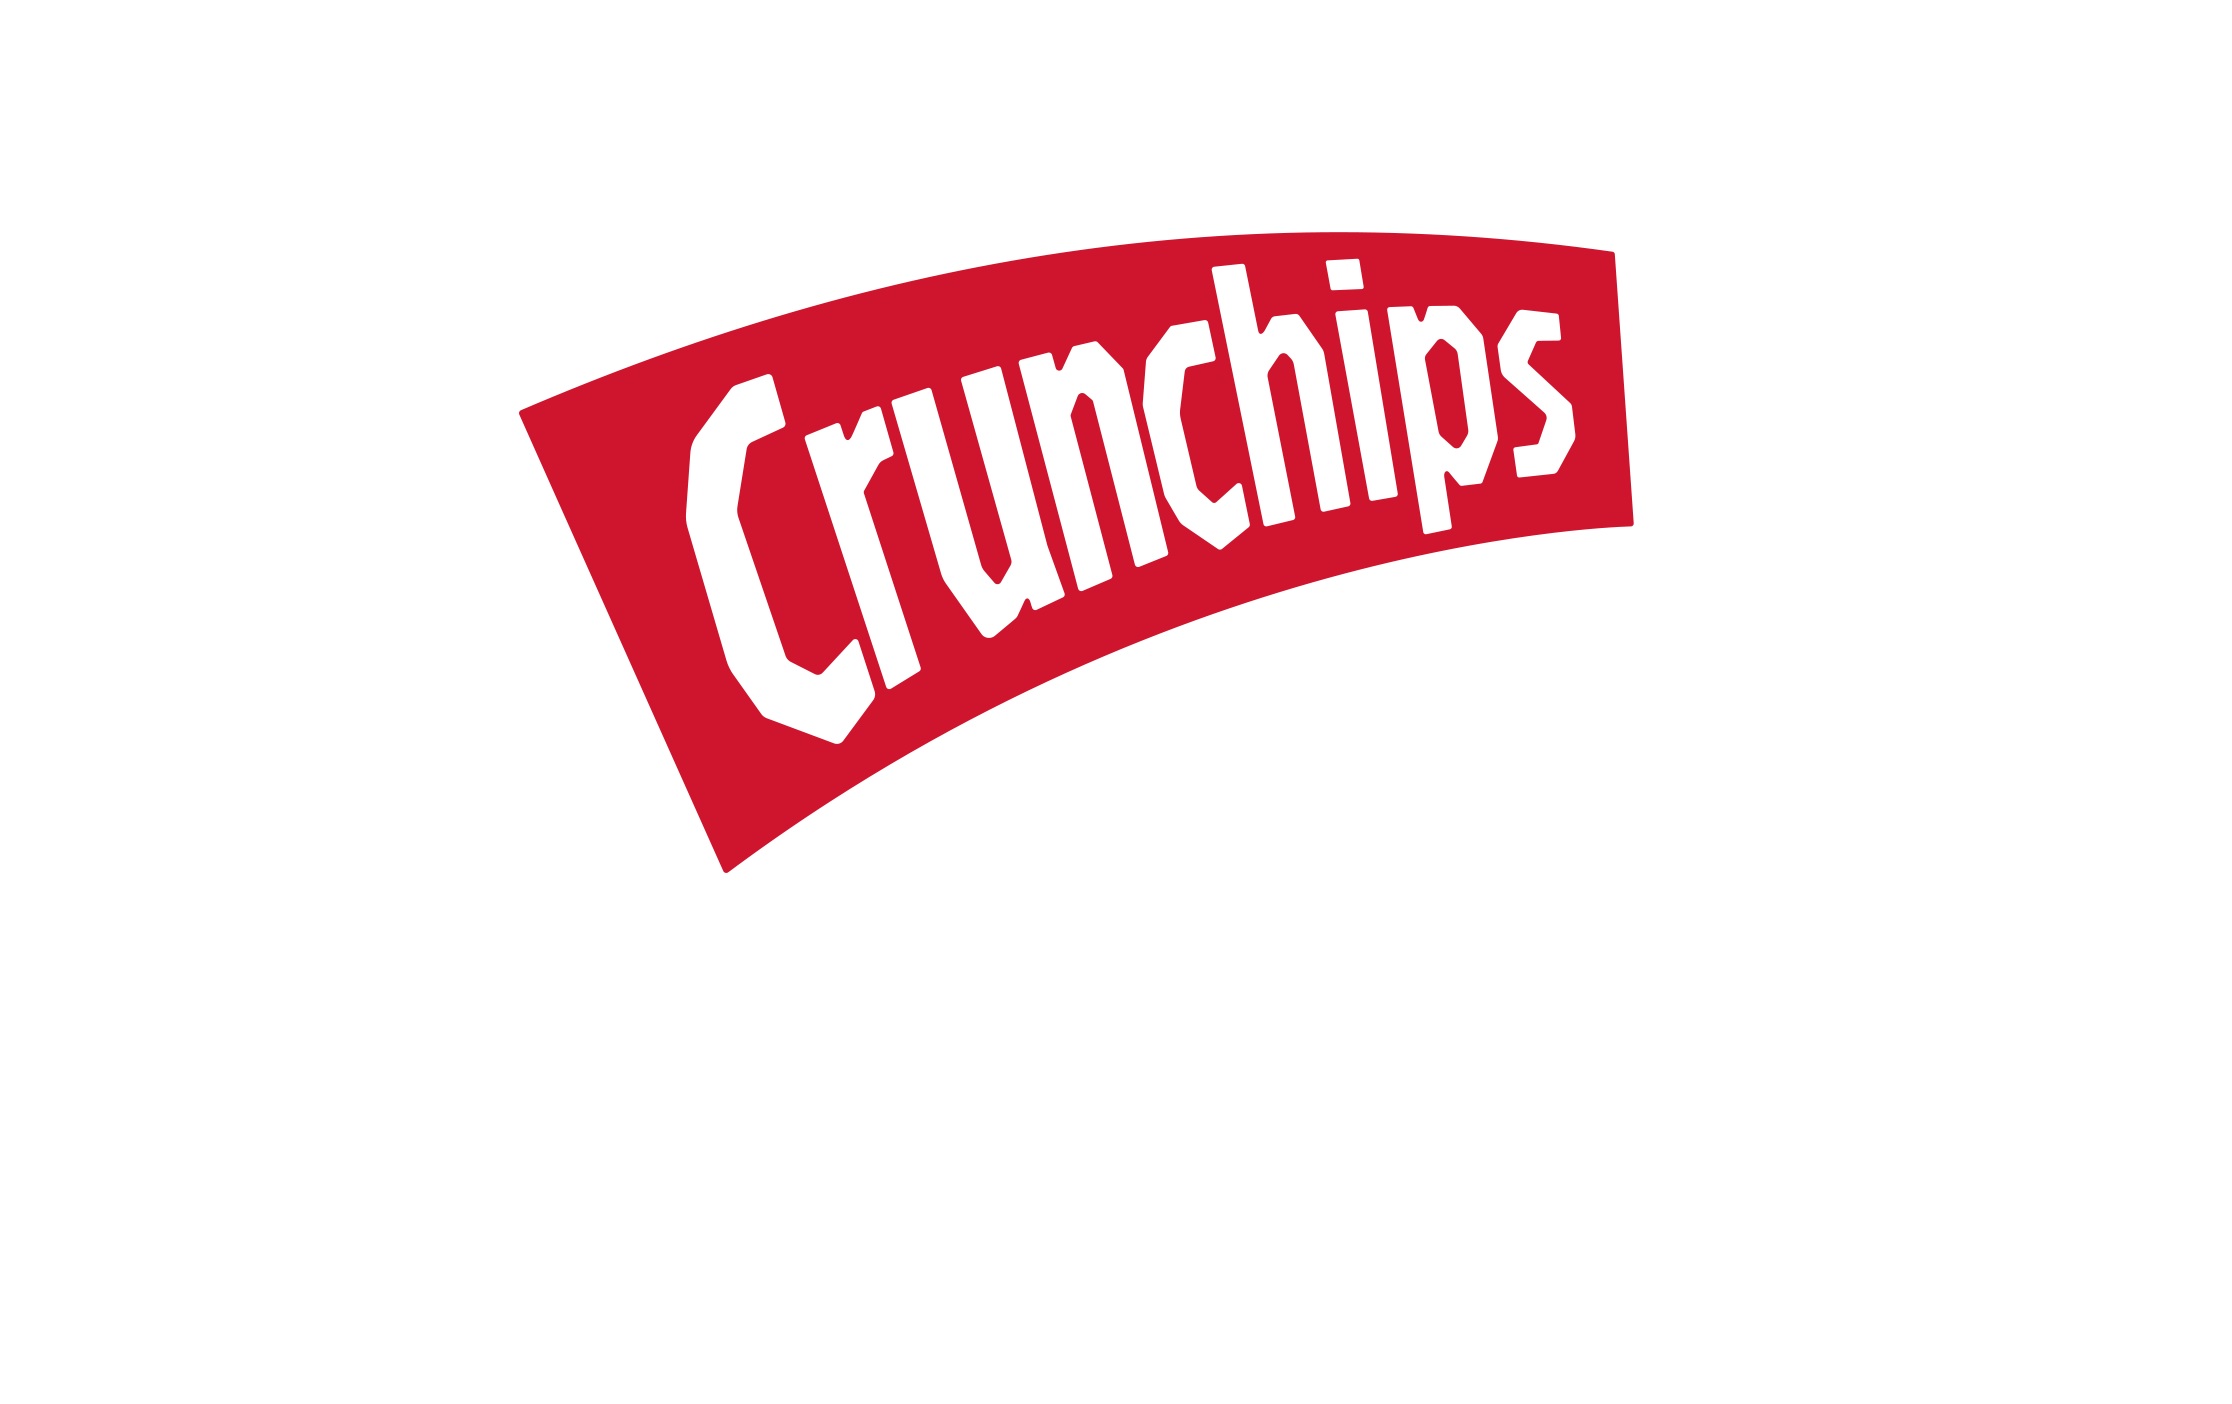 Crunchips gra z WOŚP!